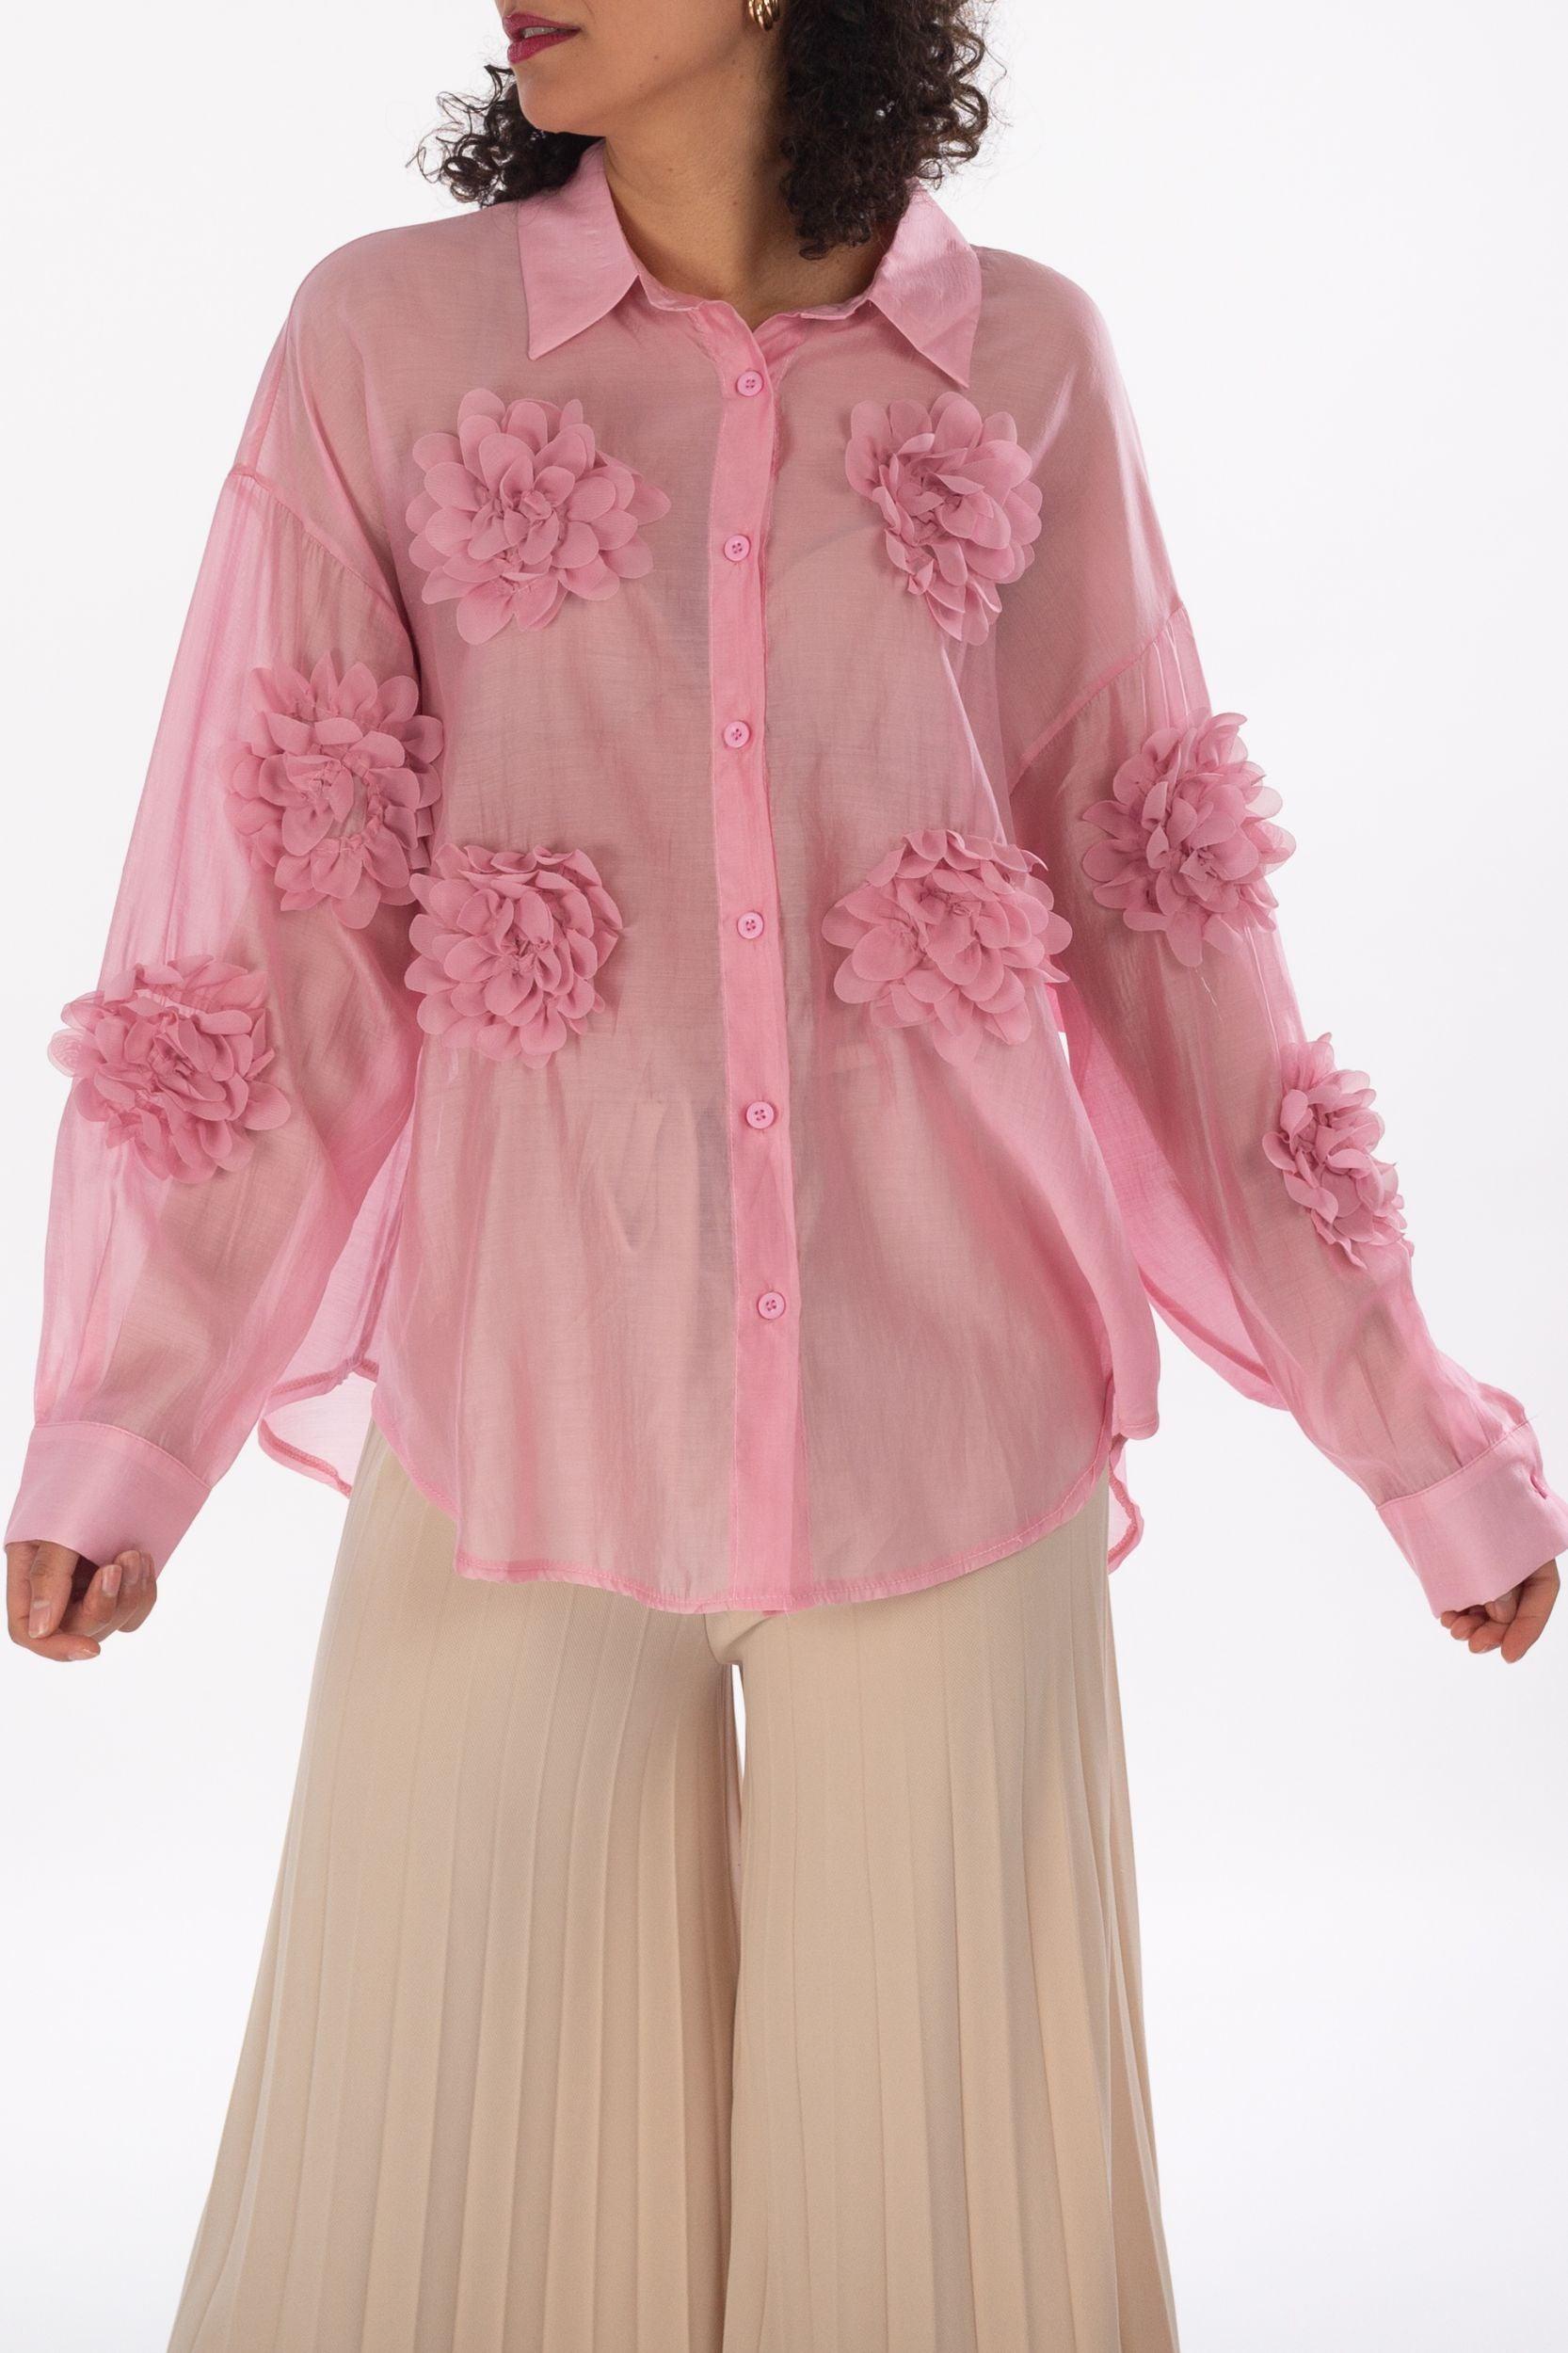 Leichte Bluse mit 3D-Blumen - La Strada